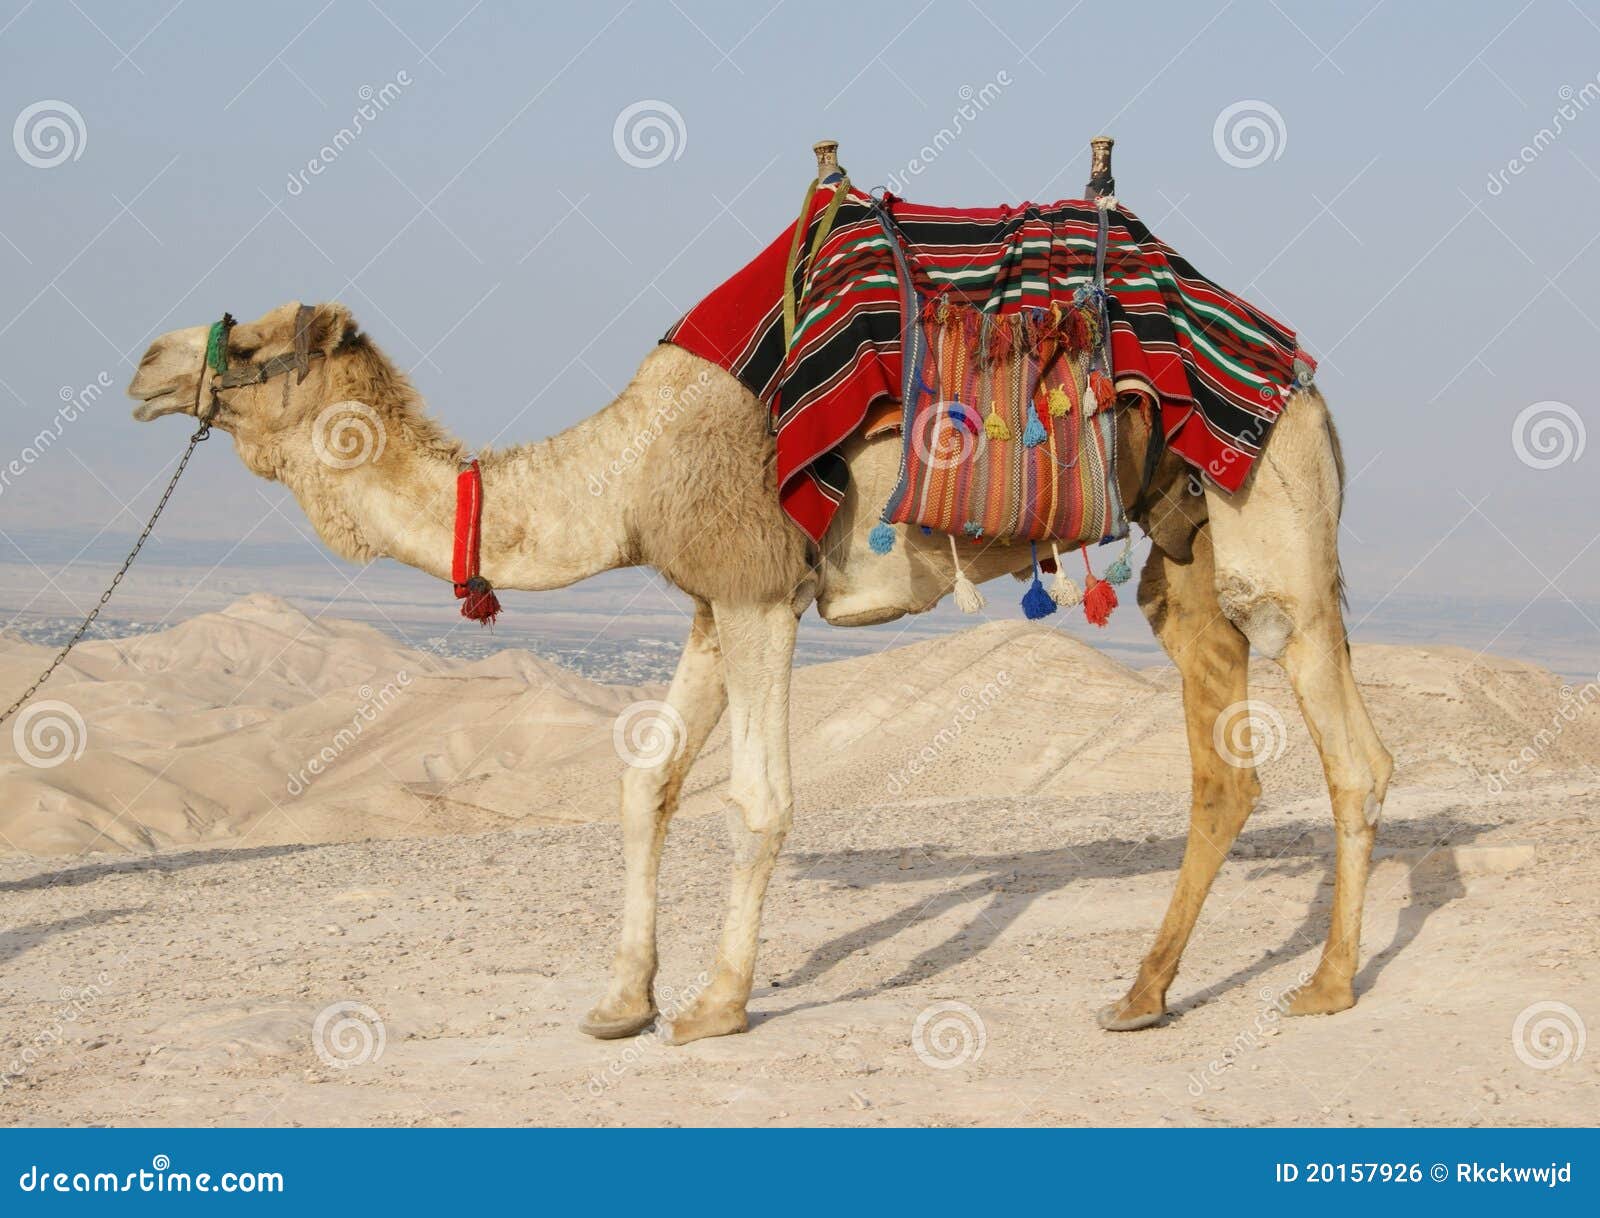 camel in judean desert, israel